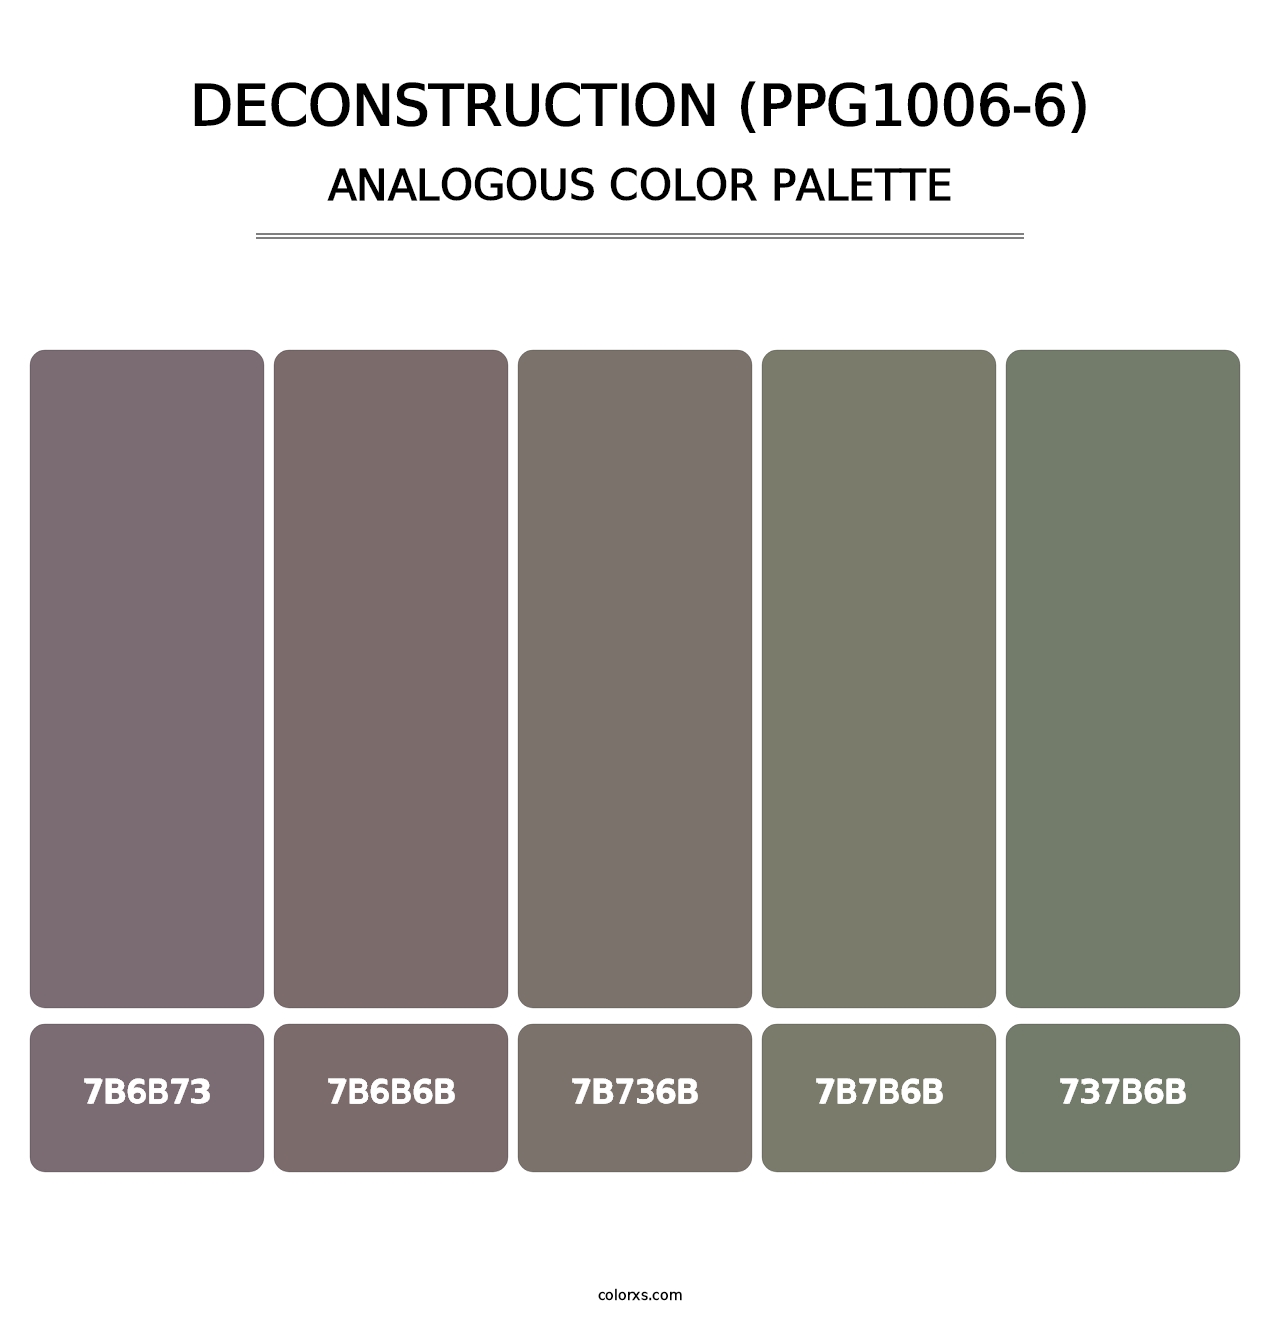 Deconstruction (PPG1006-6) - Analogous Color Palette